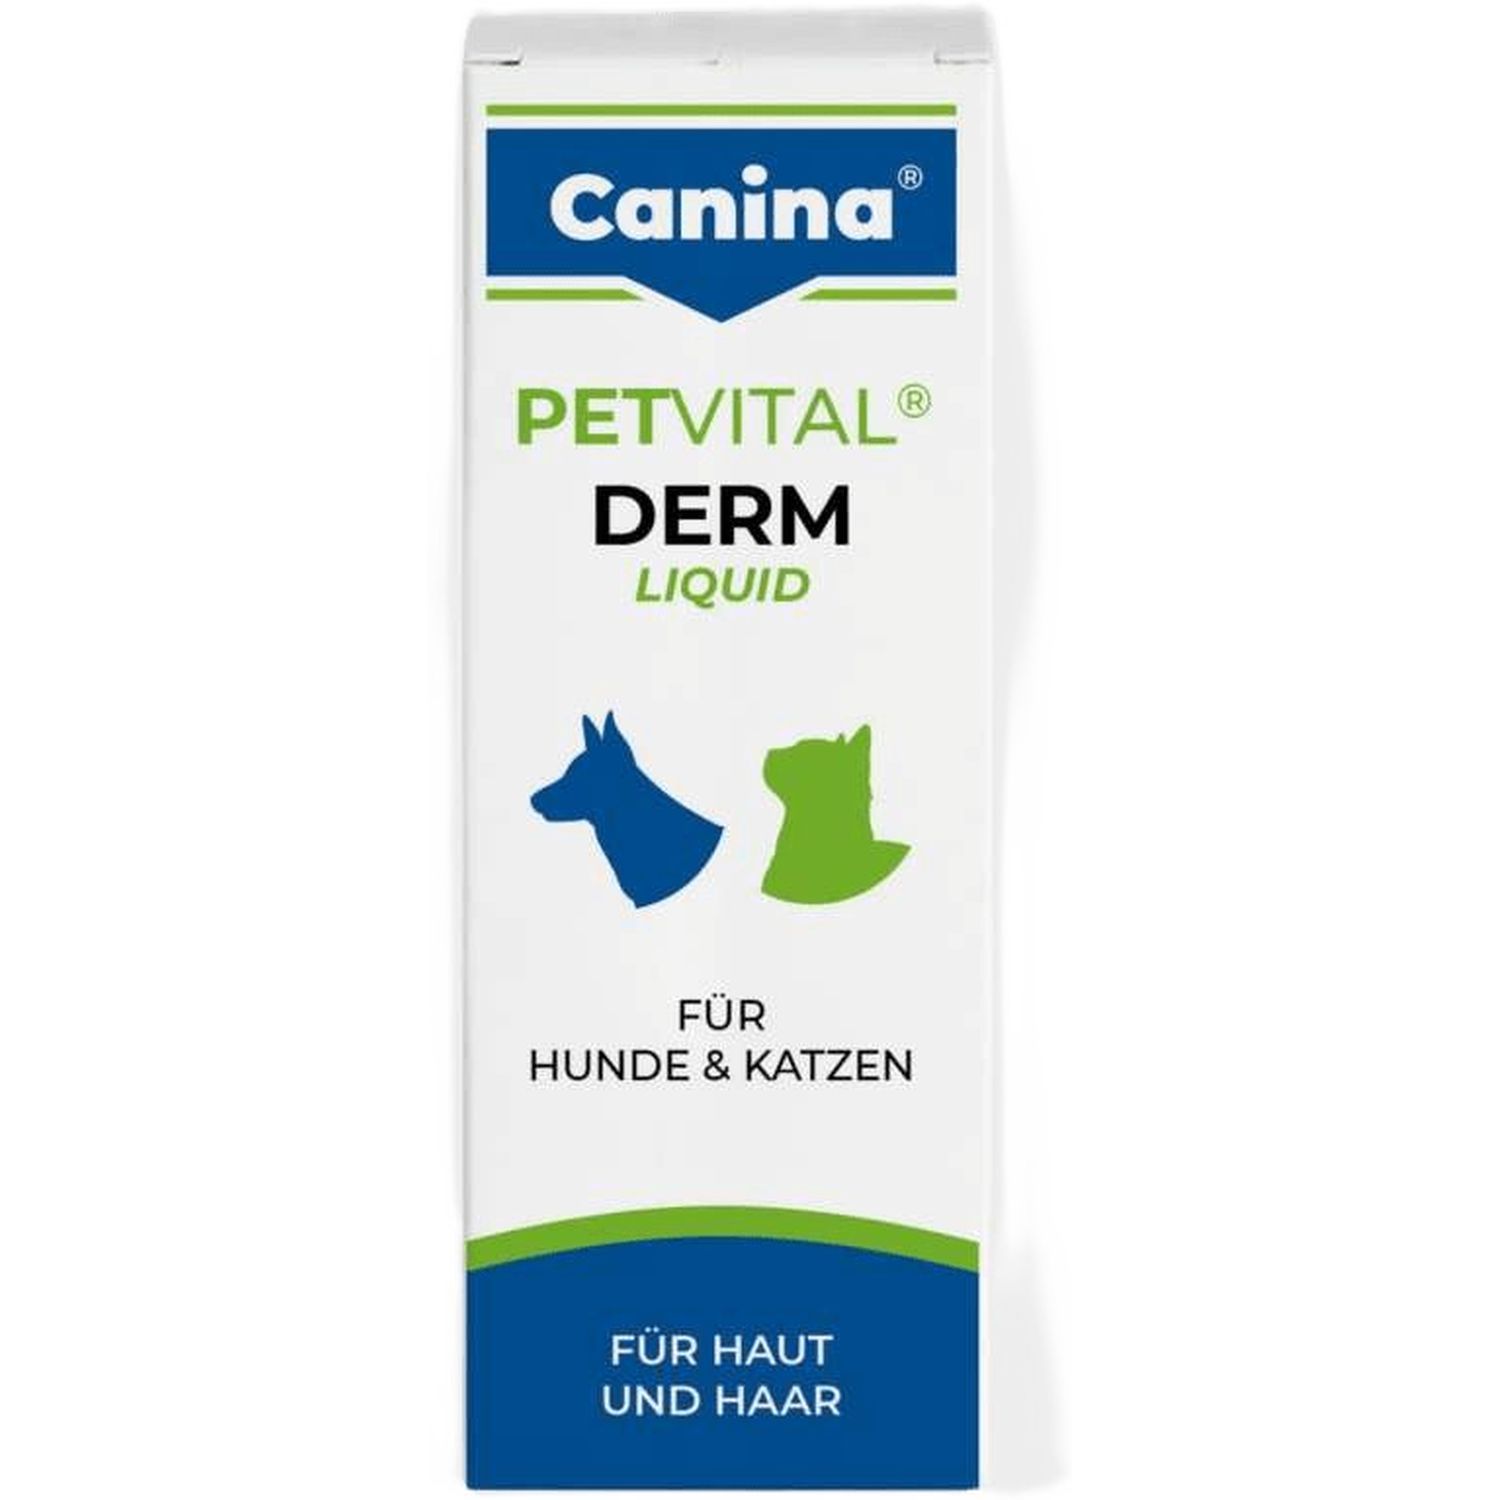 Вітамінізований тонік Canina Petvital Derm-Liquid для котів та собак, для проблемної шерсті, 25 мл - фото 1